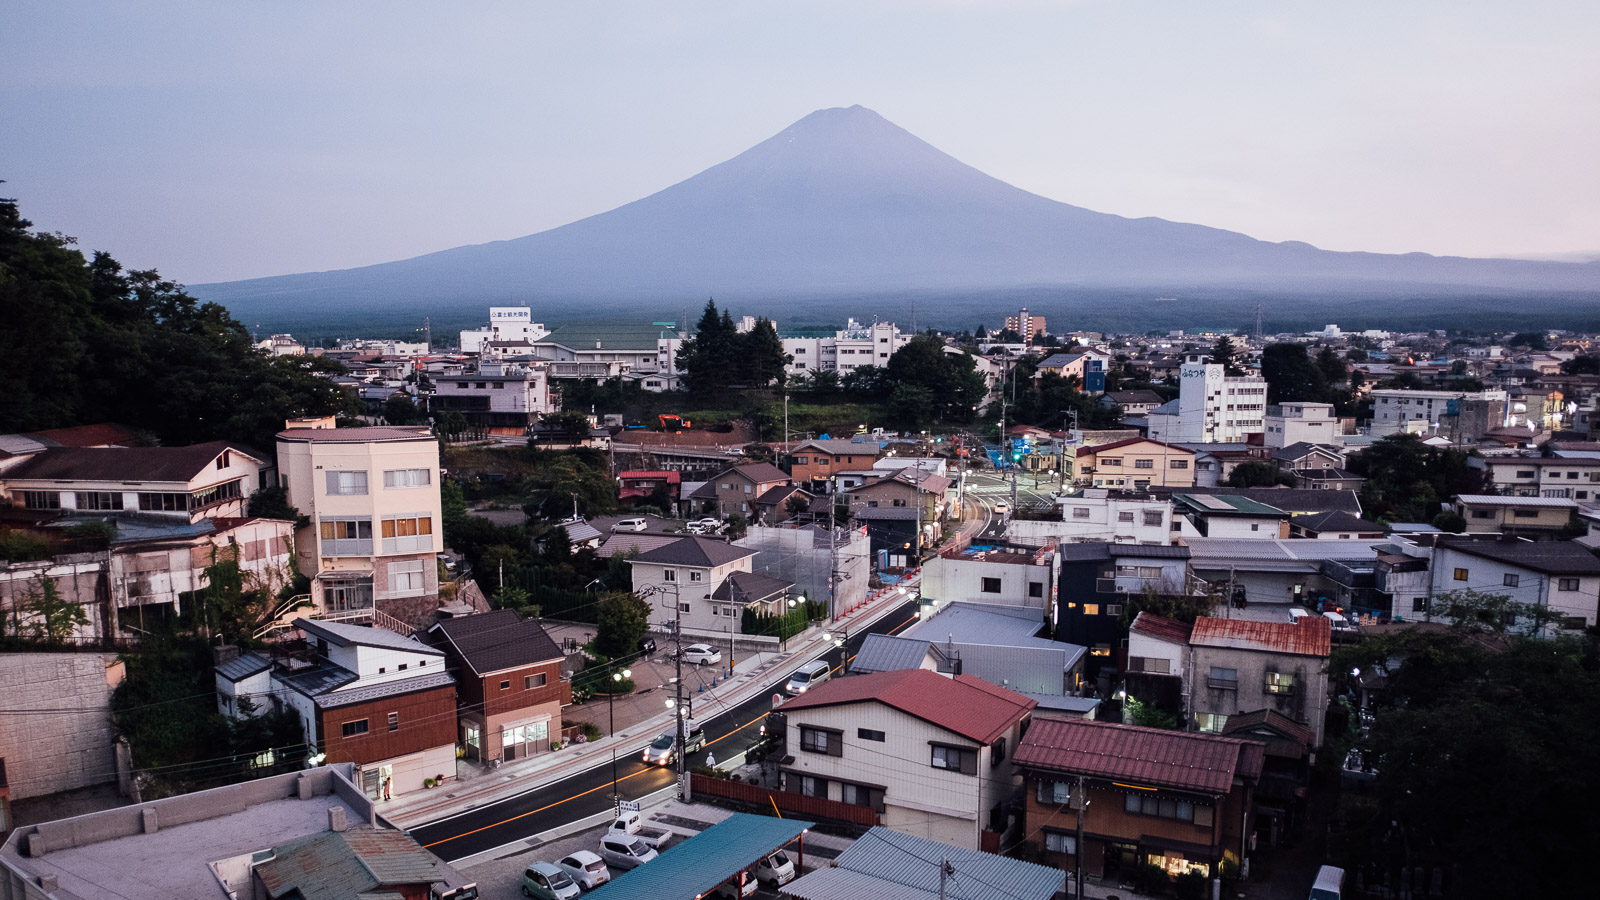 View of Mt. Fuji from Fujikawaguchiko